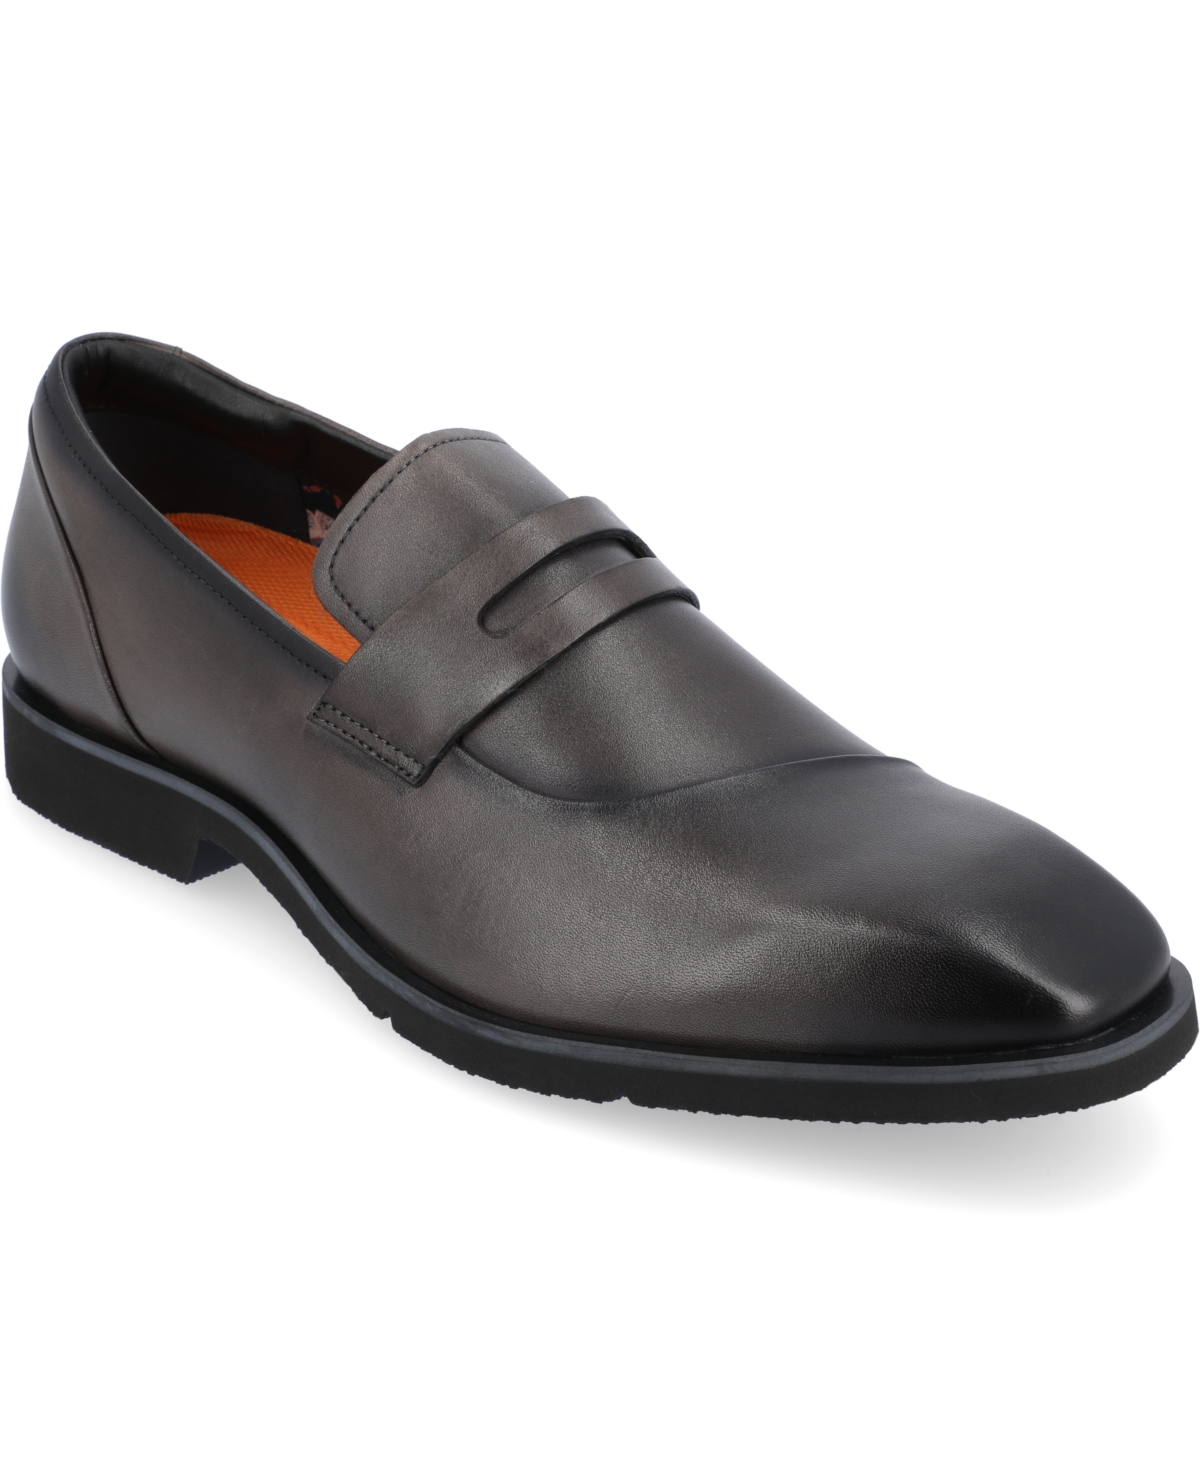 Men's Zenith Chisel Toe Penny Loafers Dress Shoes - Cognac